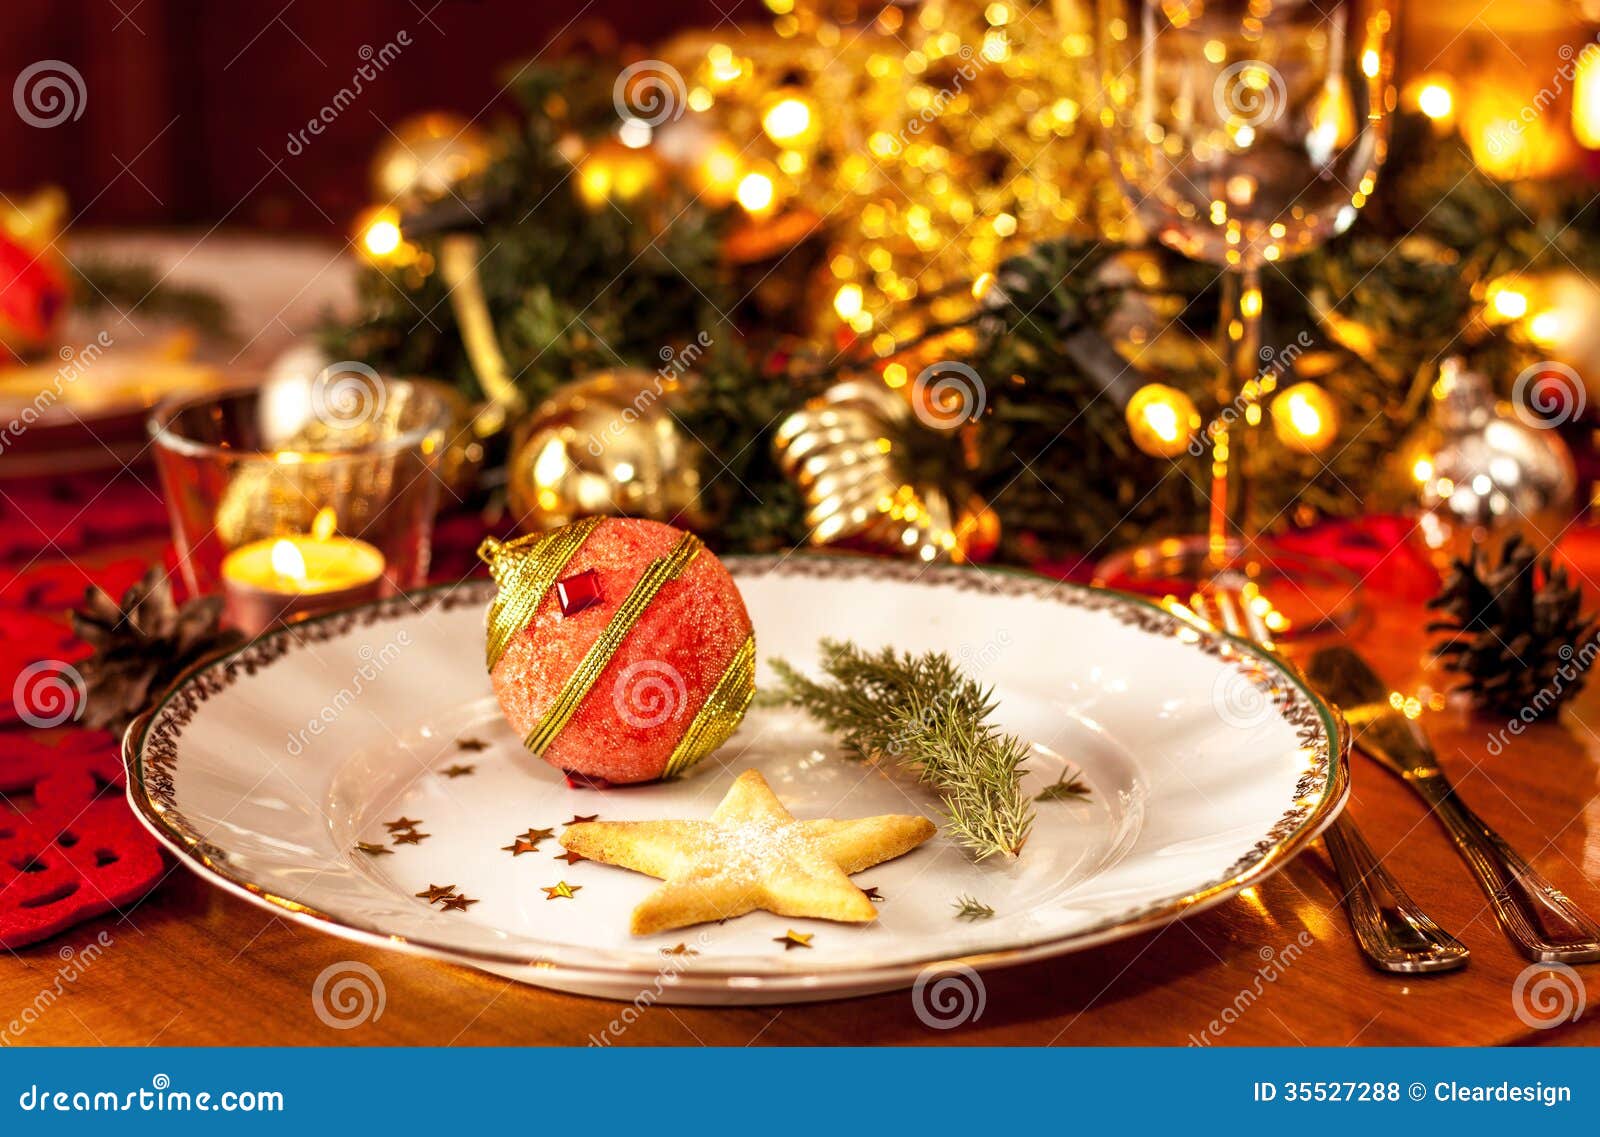 clipart christmas dinner table - photo #44